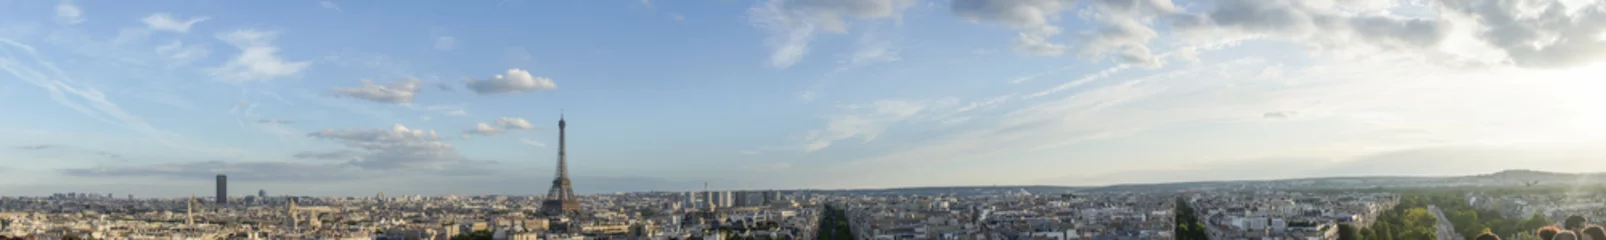 Poster de jardin Paris paysage panoramique de paris